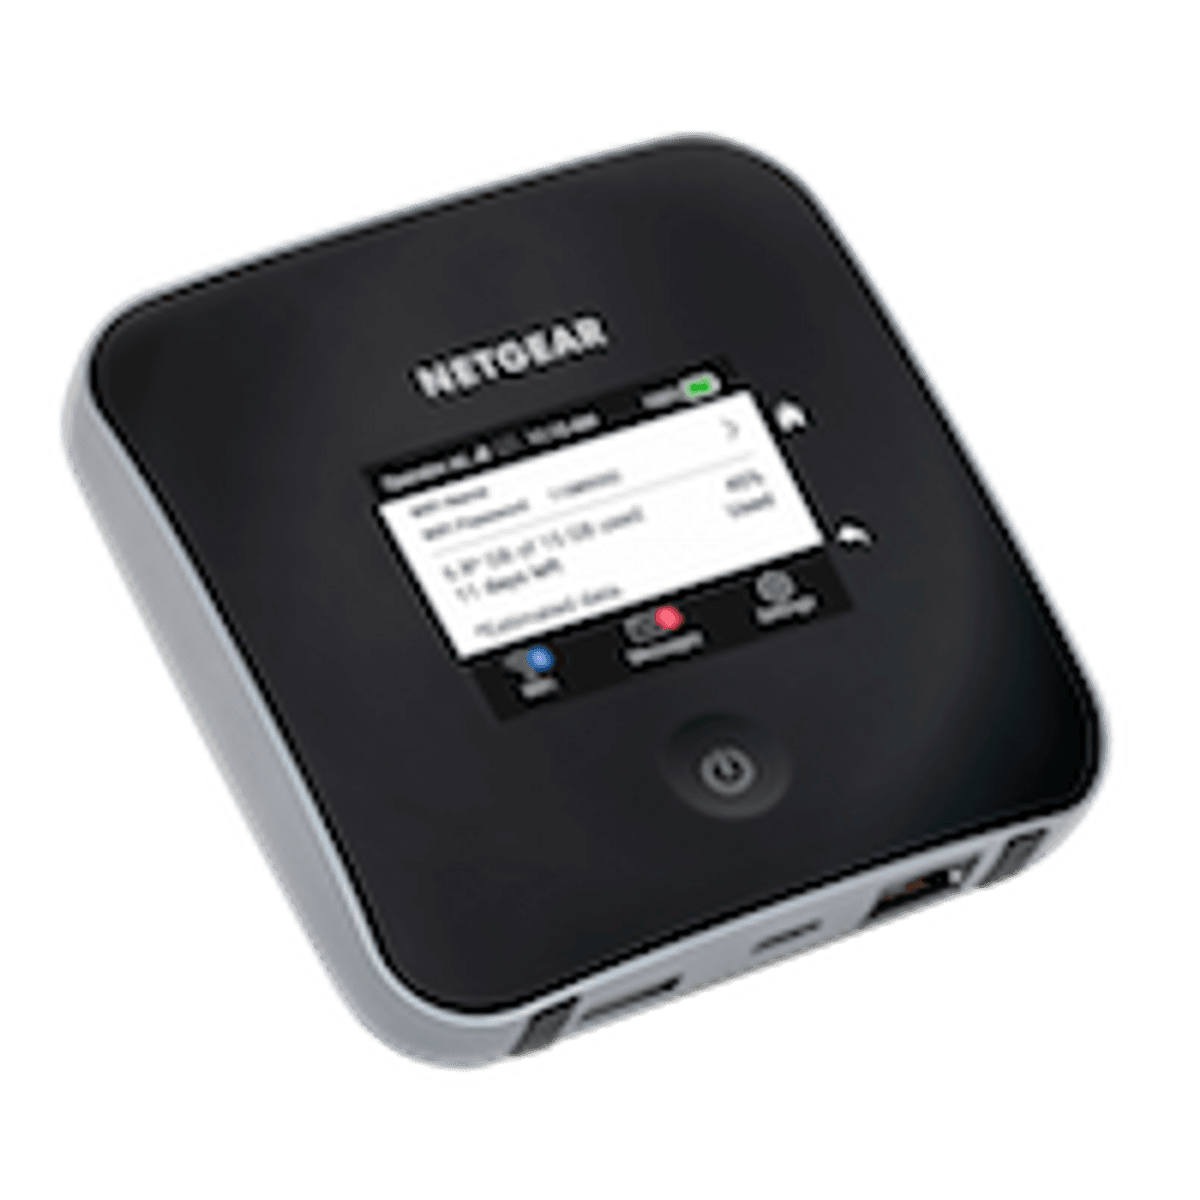 NETGEAR lanceert mobiele 4G router image